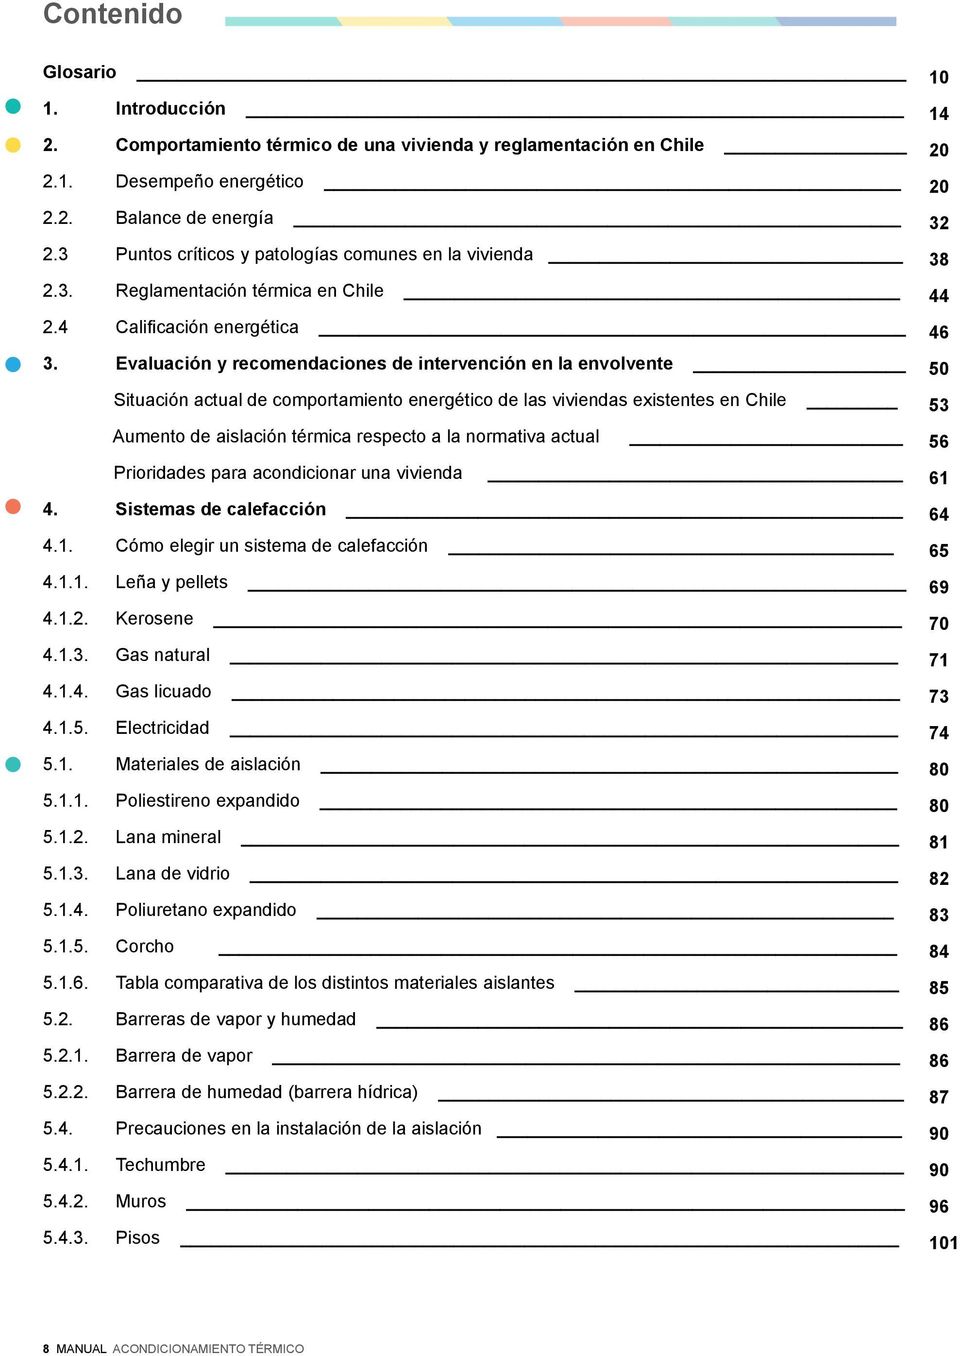 Evaluación y recomendaciones de intervención en la envolvente Situación actual de comportamiento energético de las viviendas existentes en Chile Aumento de aislación térmica respecto a la normativa